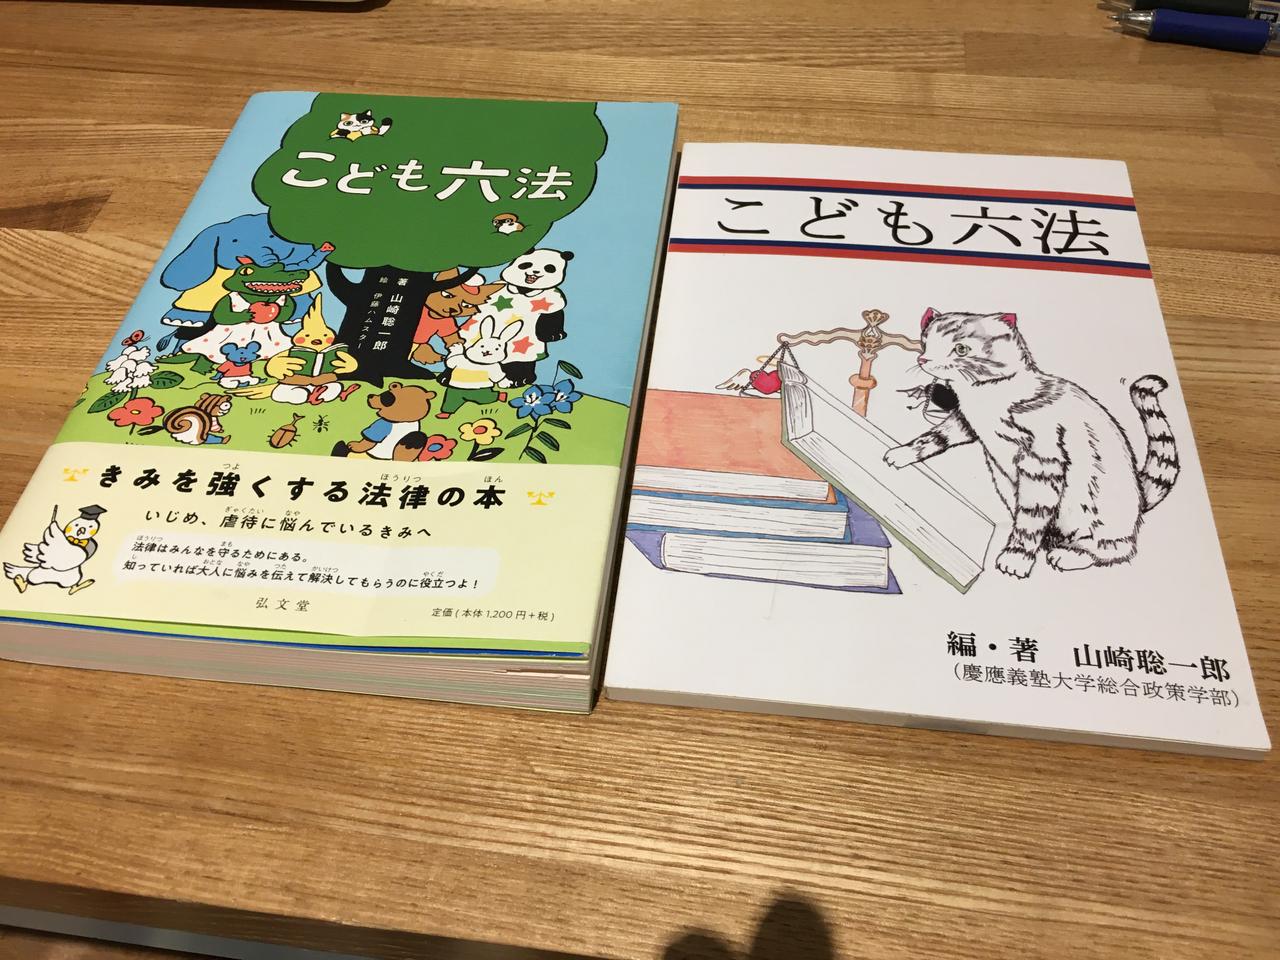 現在のこども六法（写真左）と、山﨑さんが400部印刷した原本（写真右）。